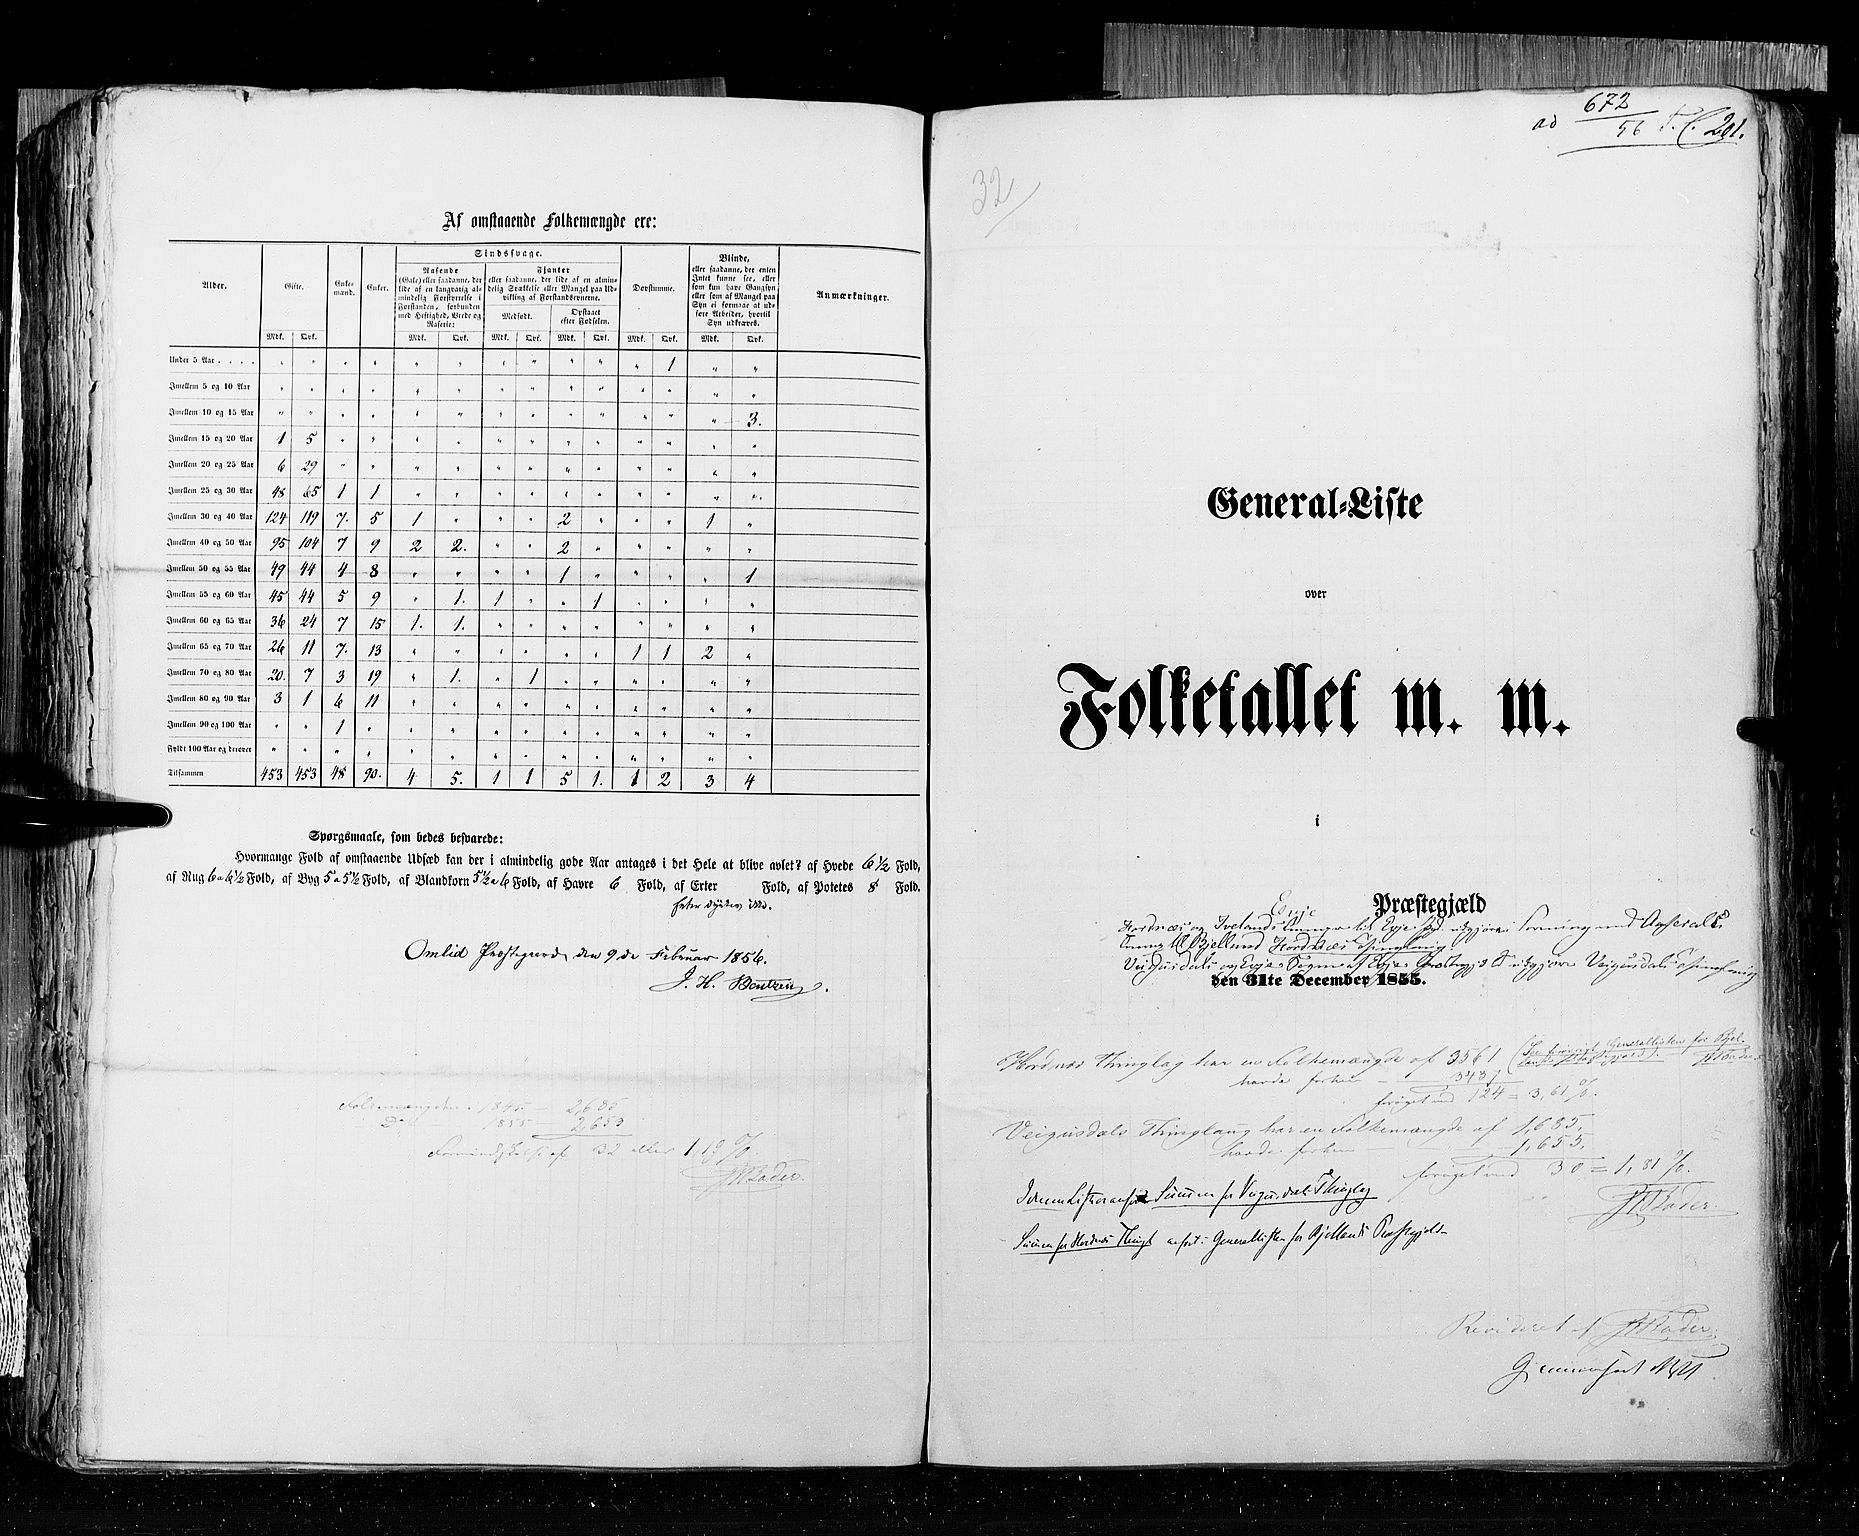 RA, Census 1855, vol. 3: Bratsberg amt, Nedenes amt og Lister og Mandal amt, 1855, p. 201